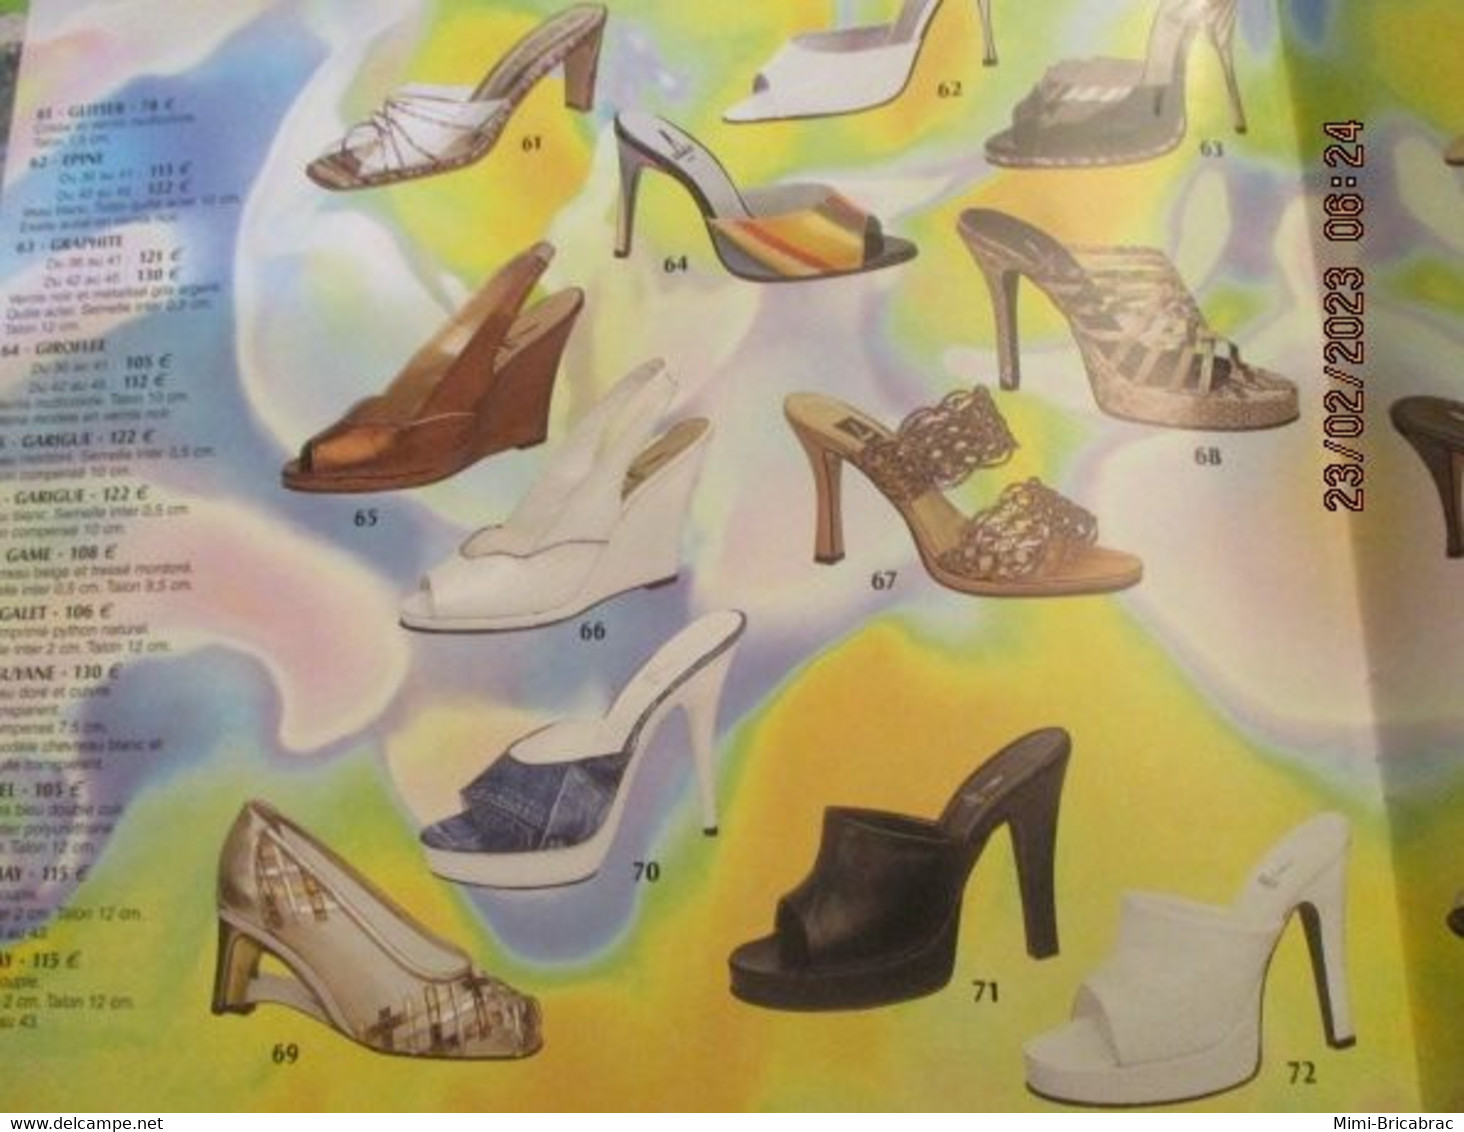 ERN223 Catalogue de la marque de chaussures ERNEST PRINTEMPS ETE 2002 l'ex spécialiste parisien du talon-aiguille